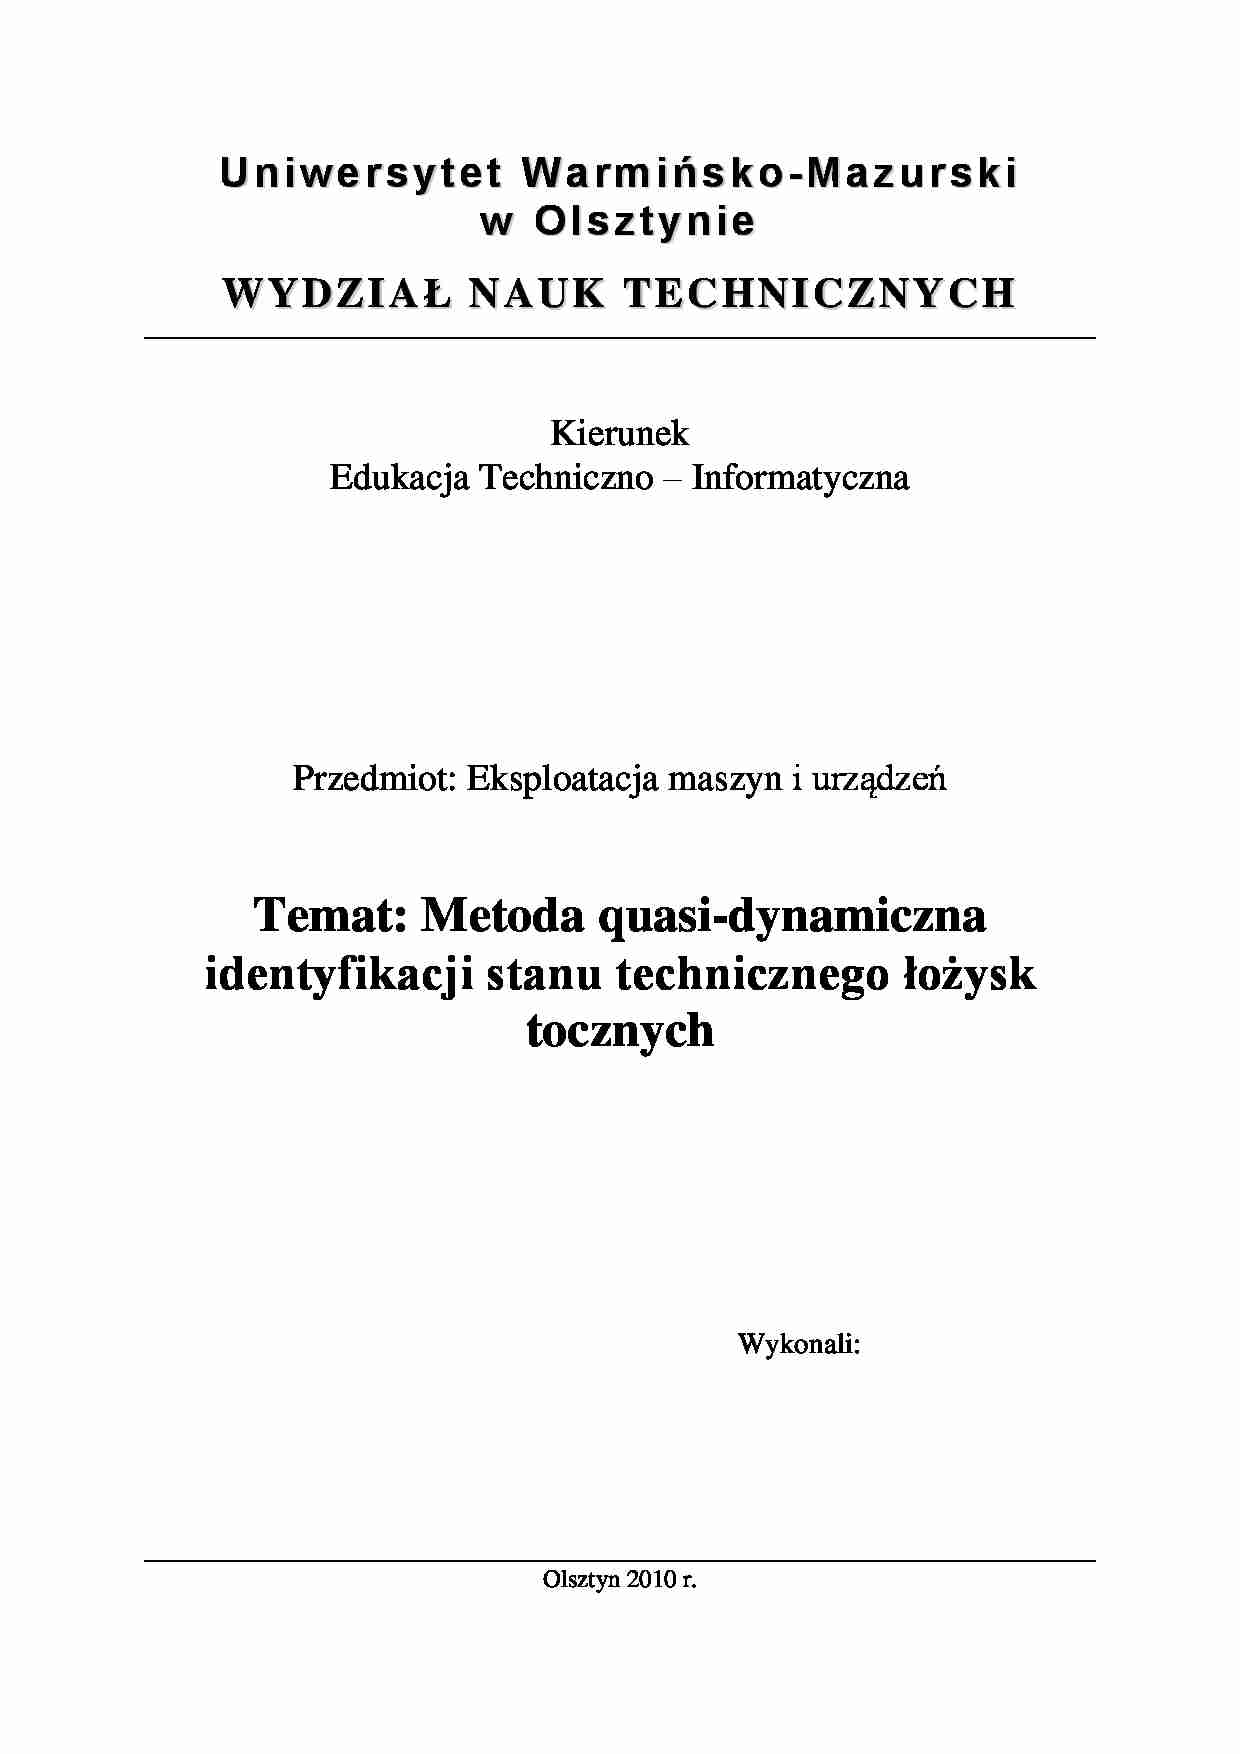 [LABORATORIA] Sprawozdanie z ćwiczenia Metoda quasi-dynamiczna identyfikacji stanu technicznego łożysk tocznych - strona 1